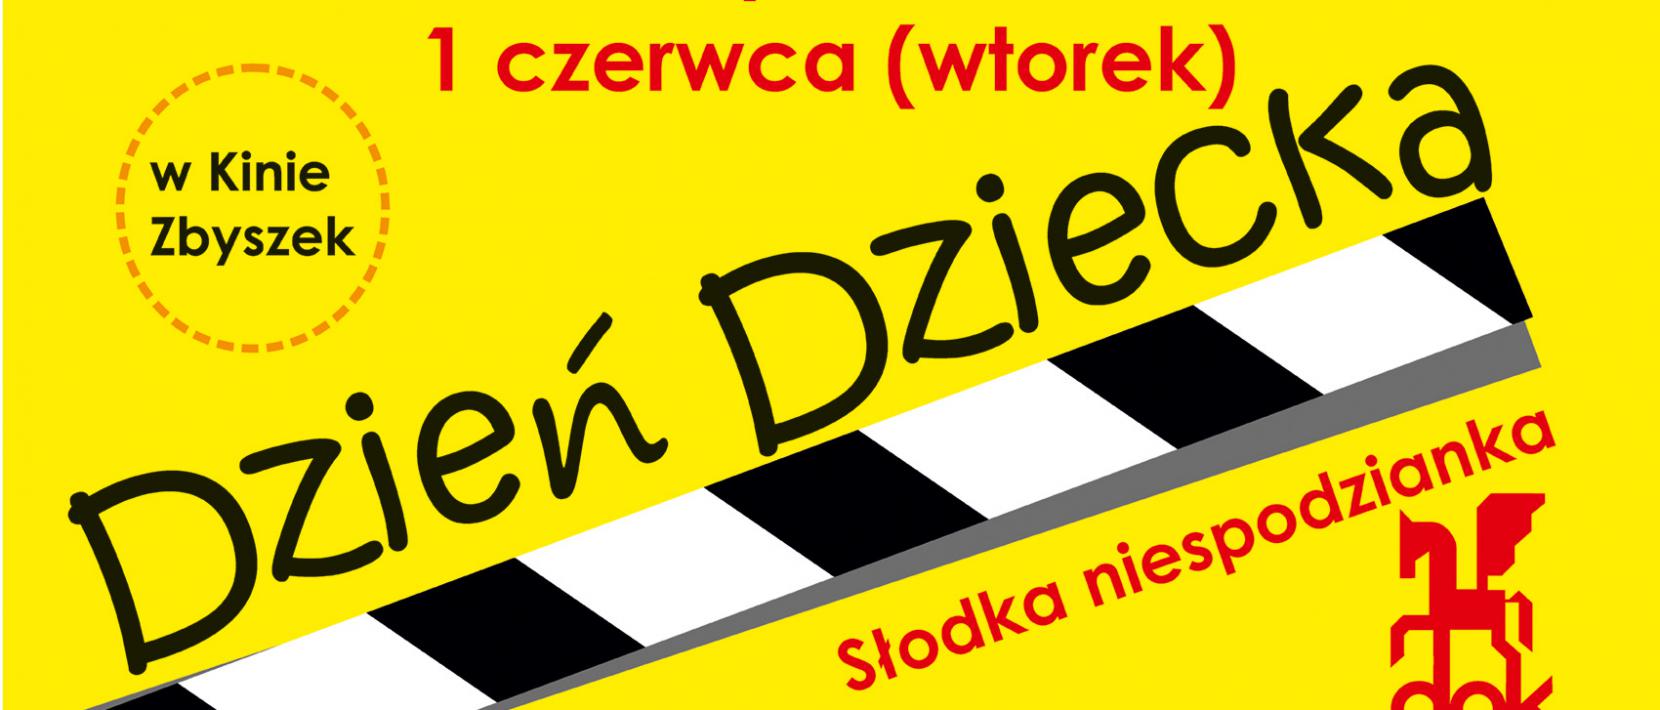 Czano-żółty plakat z napisem Dzień Dziecka i terminami projekcji filmów